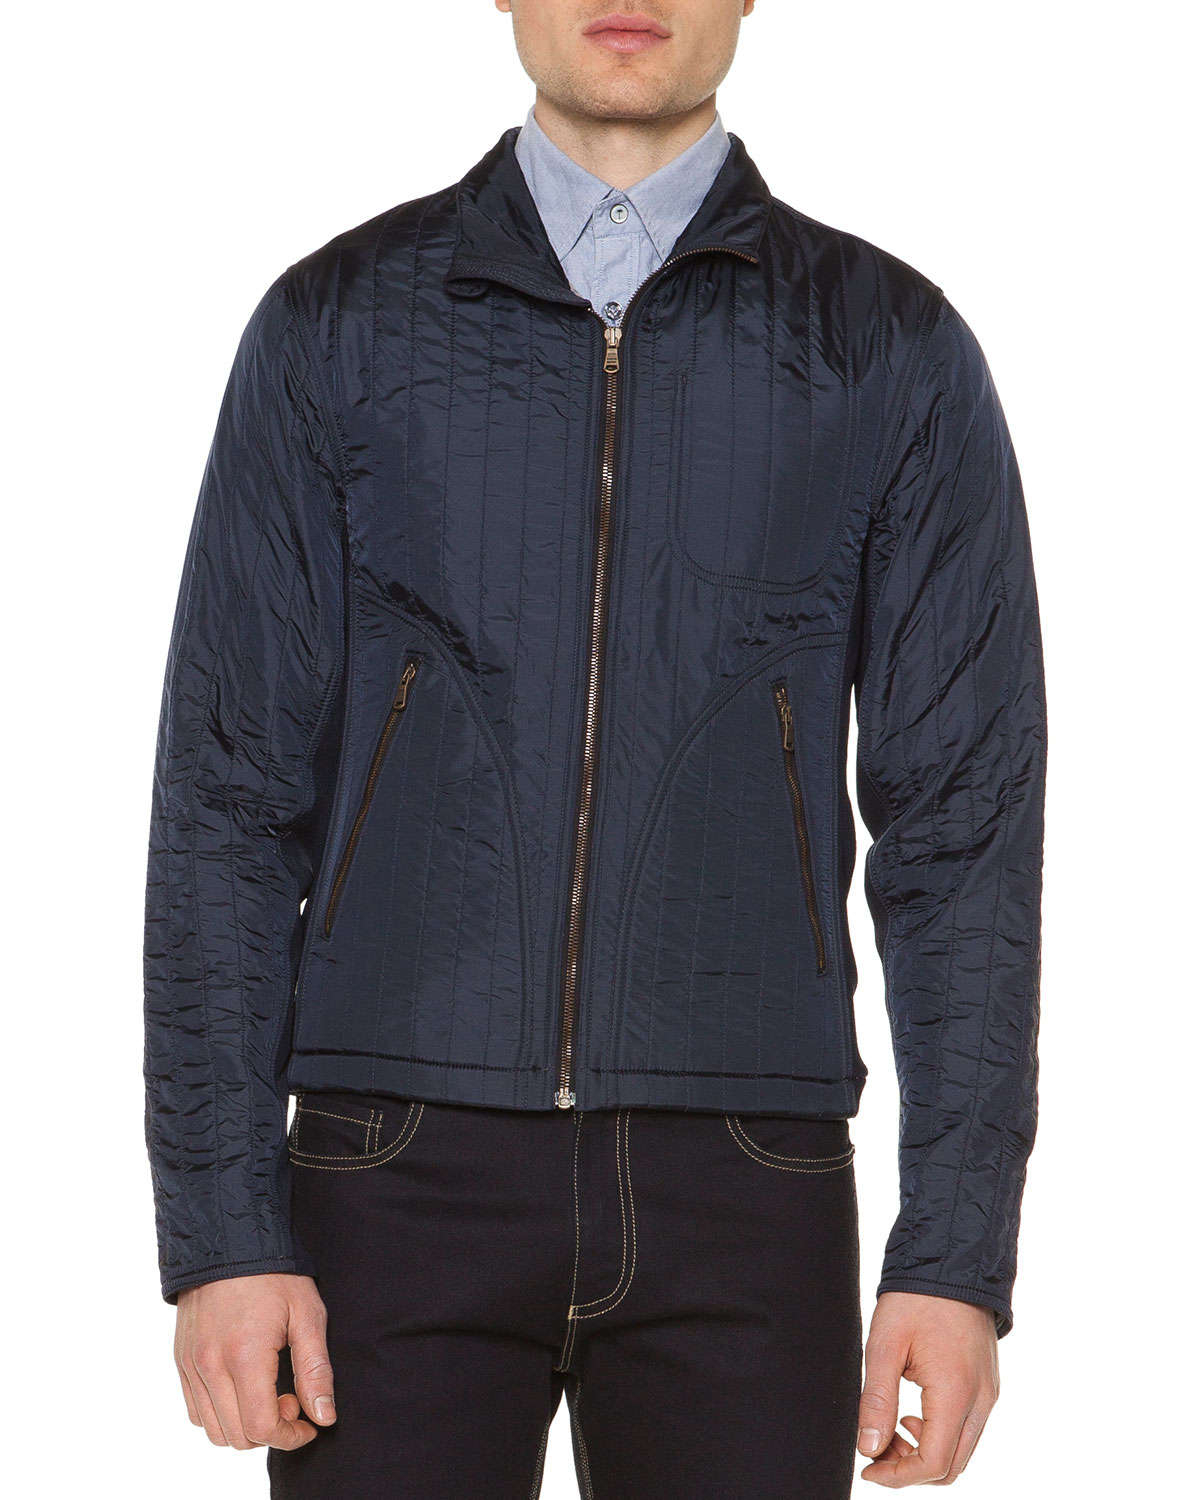 Lined Windbreaker Jackets For Men - Jacket To